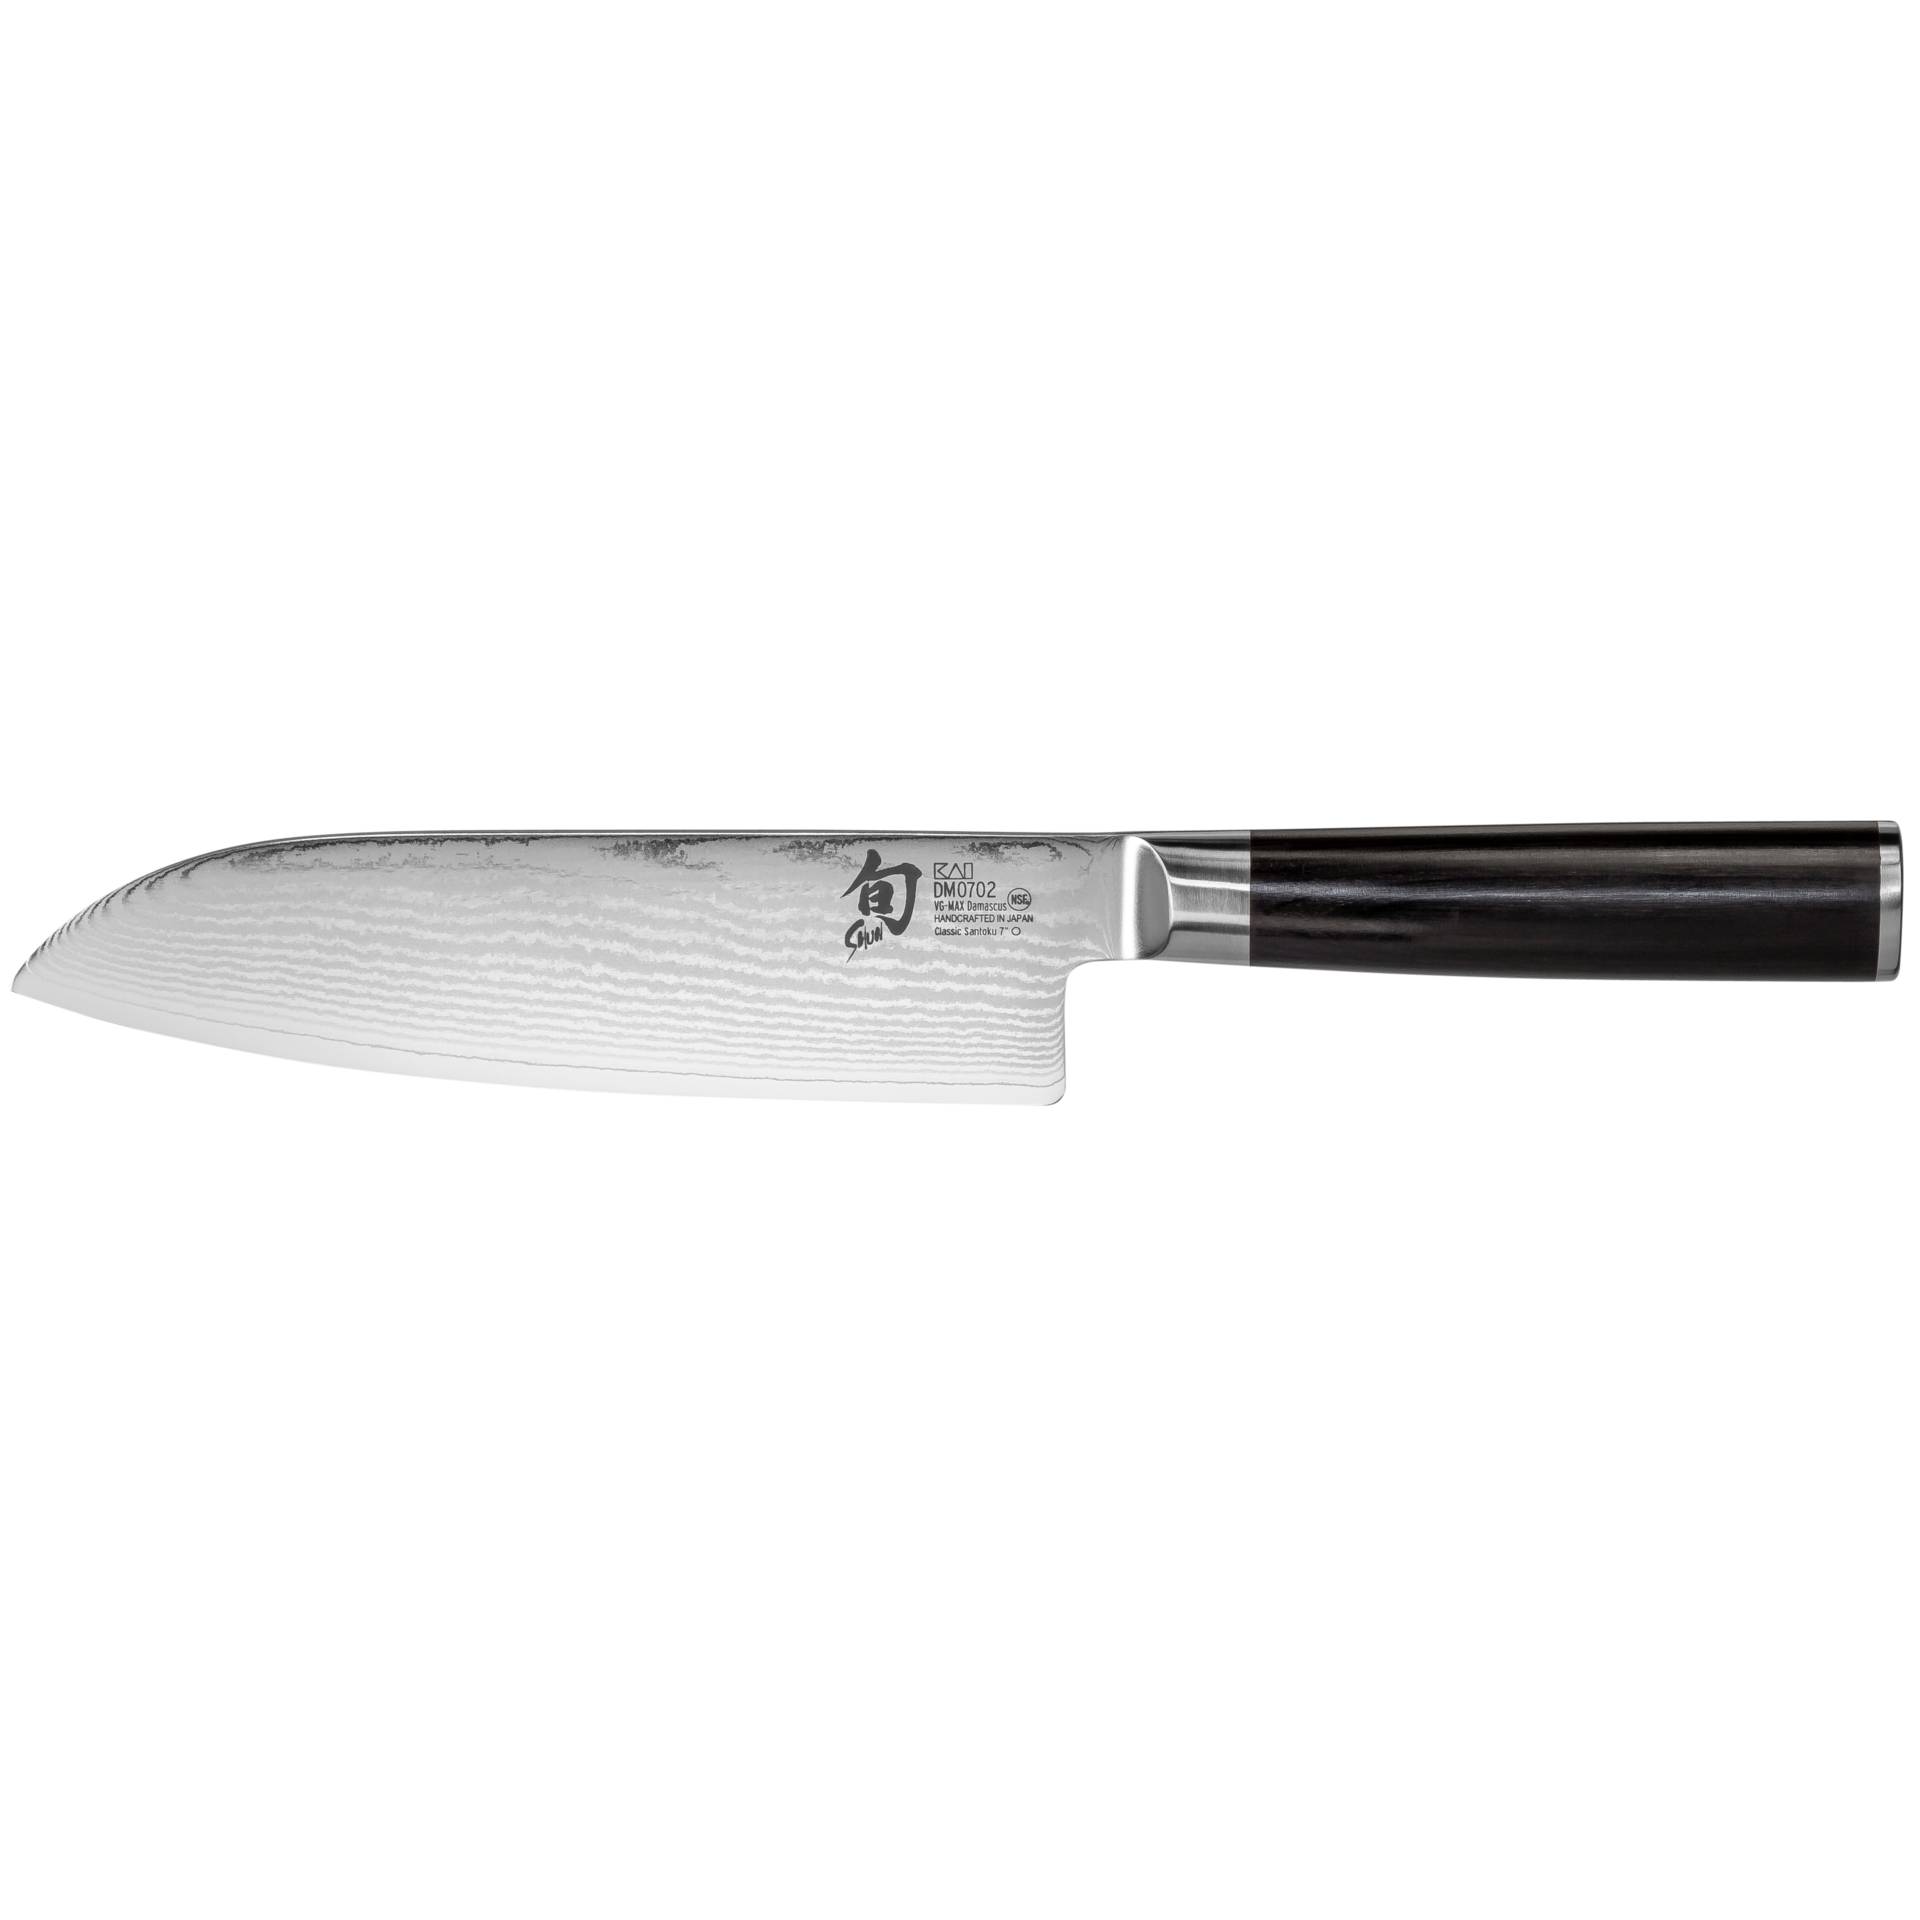 KAI Shun Classic coltello Santoku 18,0cm